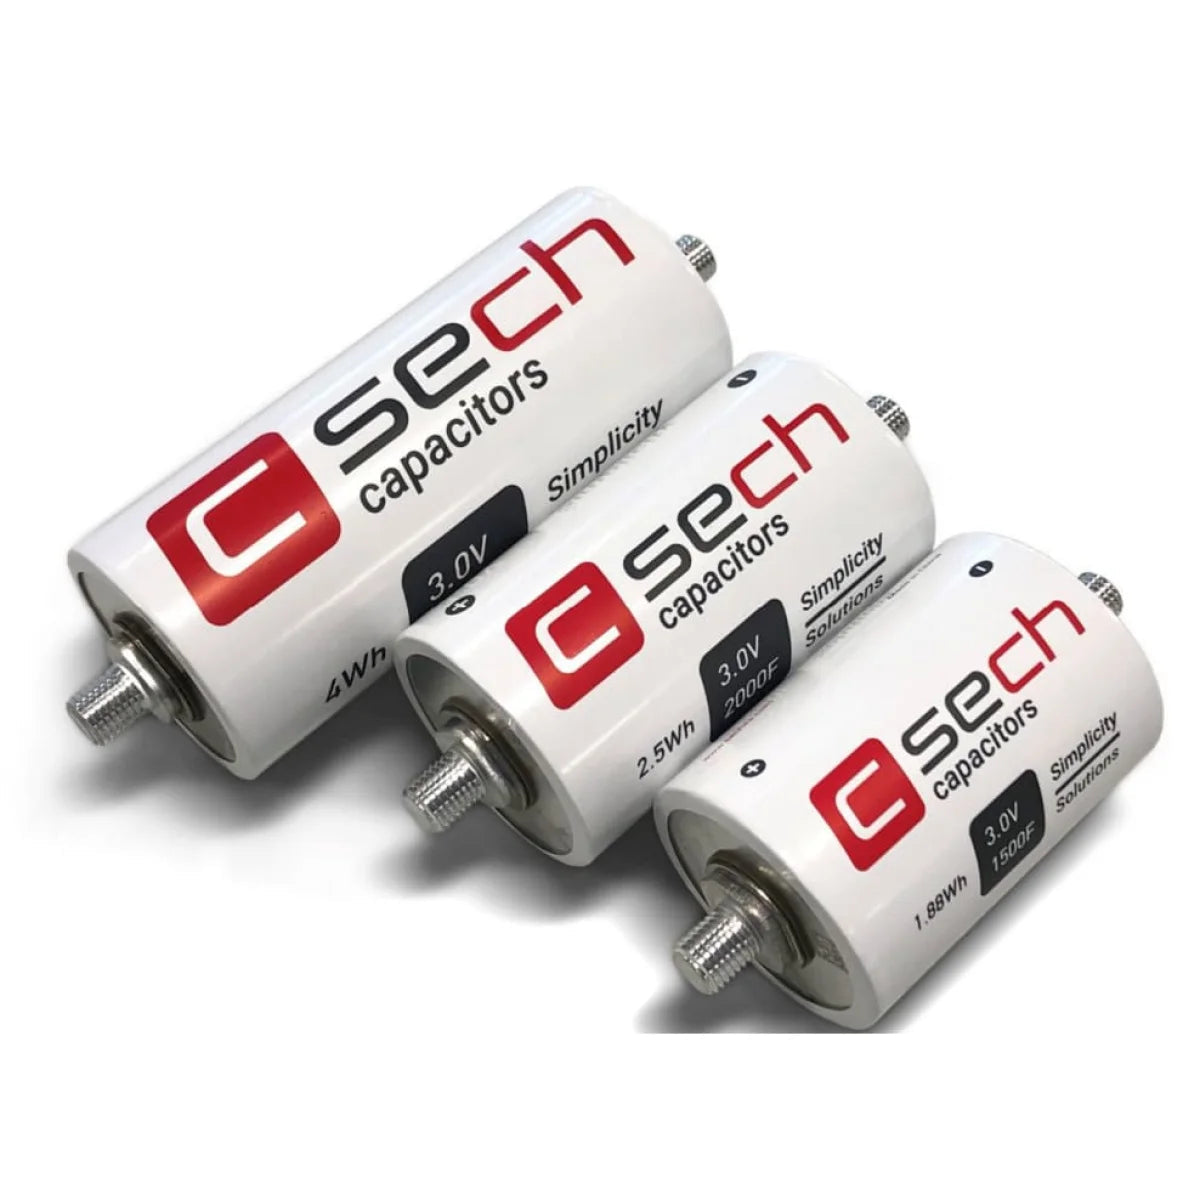 SECH SECH C60T-3R0-3000 Kondensator 3V 3000 - Supercap FaradKondensator